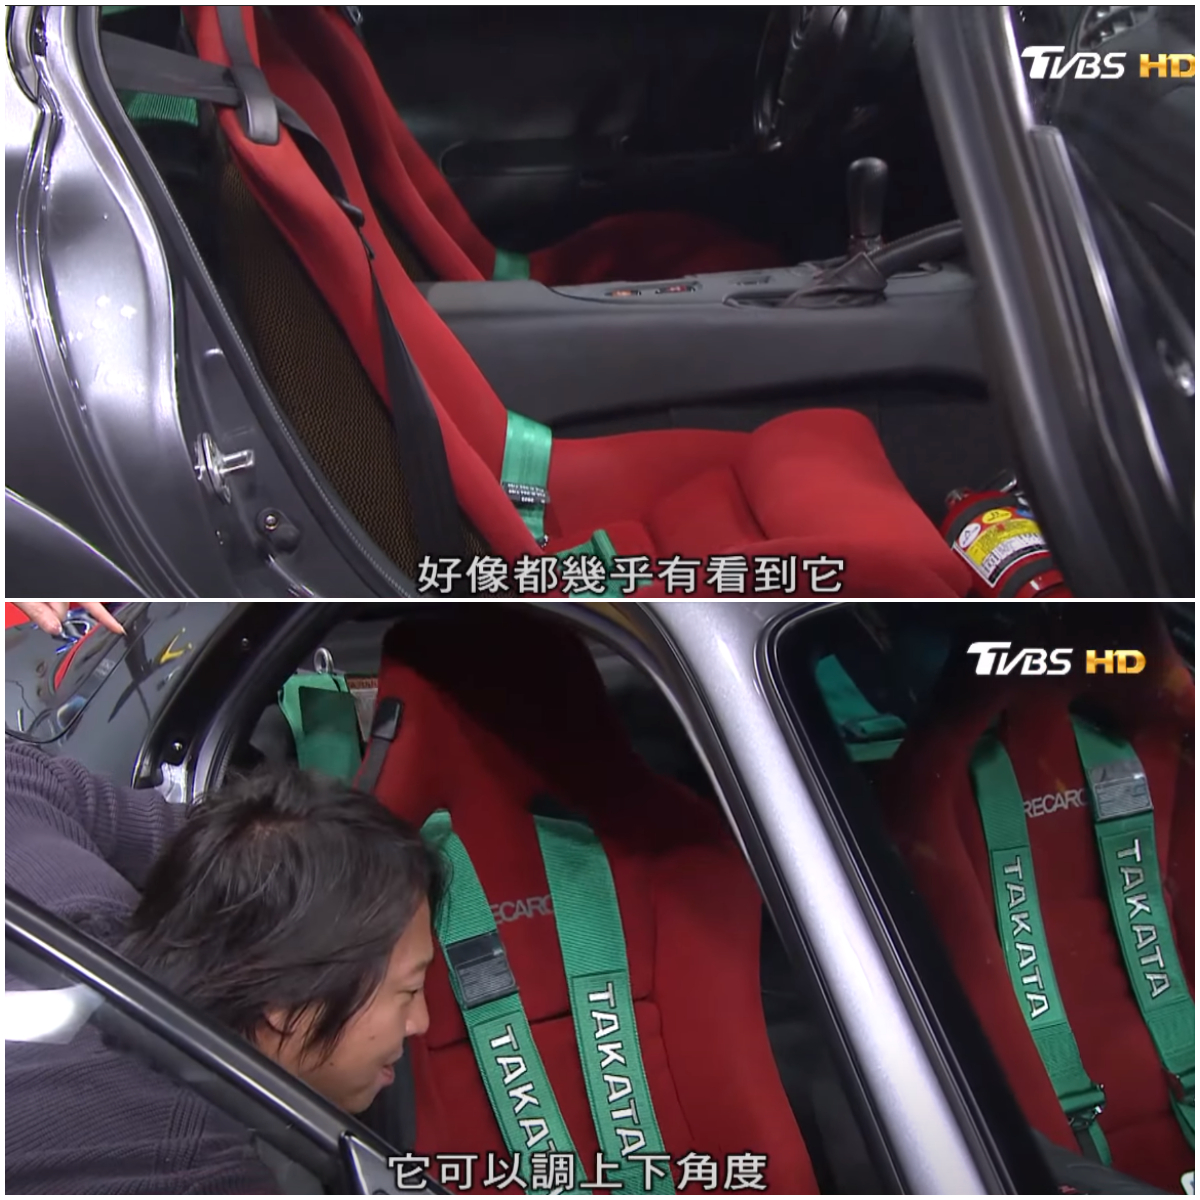 車艙內兩張紅色Recaro賽車椅為原廠配置，擁有賽車椅上稀有的椅背可調功能。(圖片來源/ 地球黃金線)